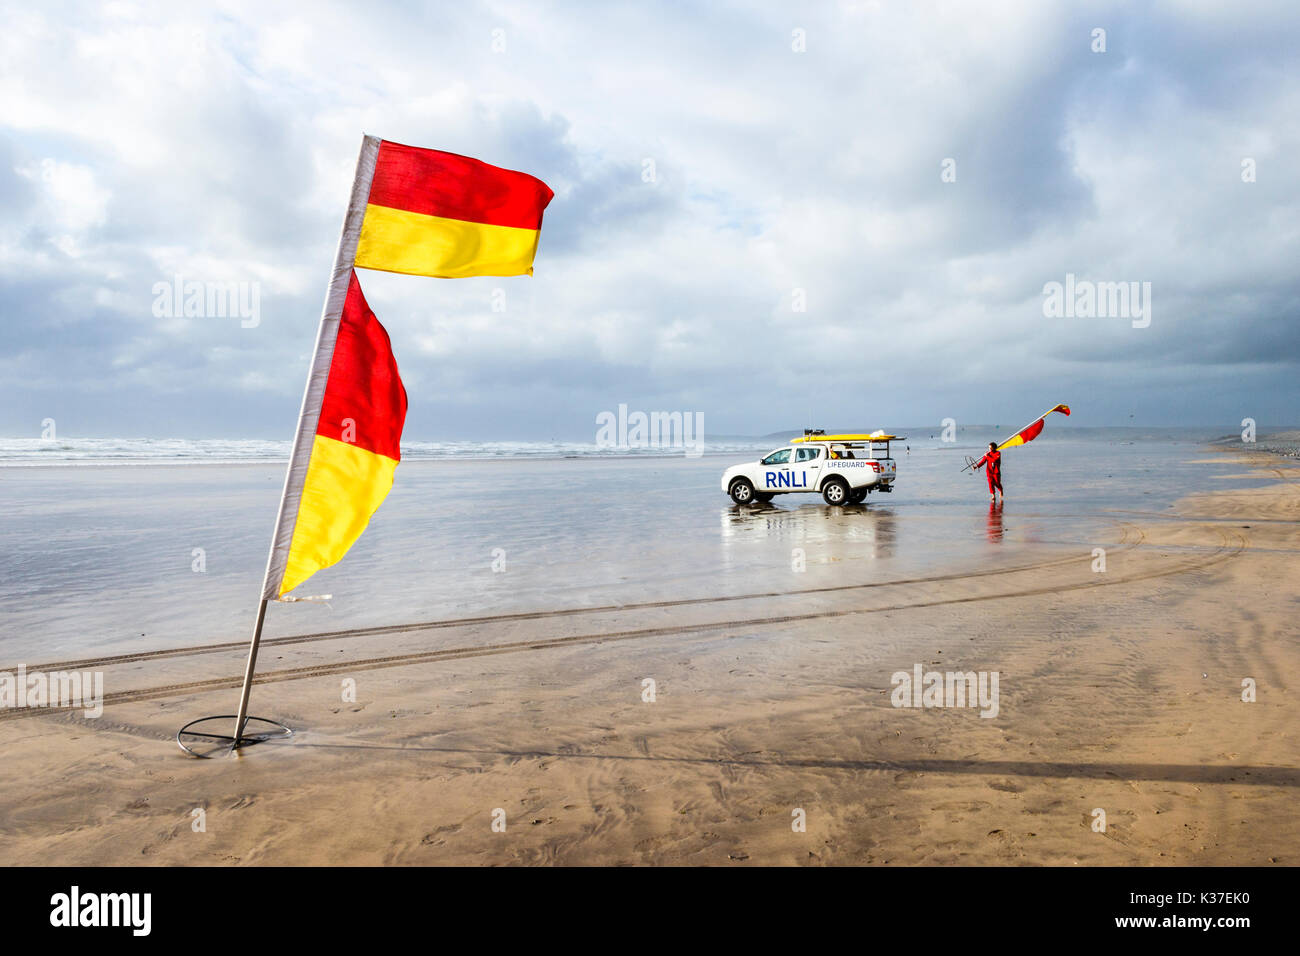 Rosso e giallo di avvertimento e bandiera RNLI bagnino di salvataggio con il veicolo sulla spiaggia sabbiosa di Condino Con la bassa marea su un nuvoloso e ventoso giorno di estate Foto Stock